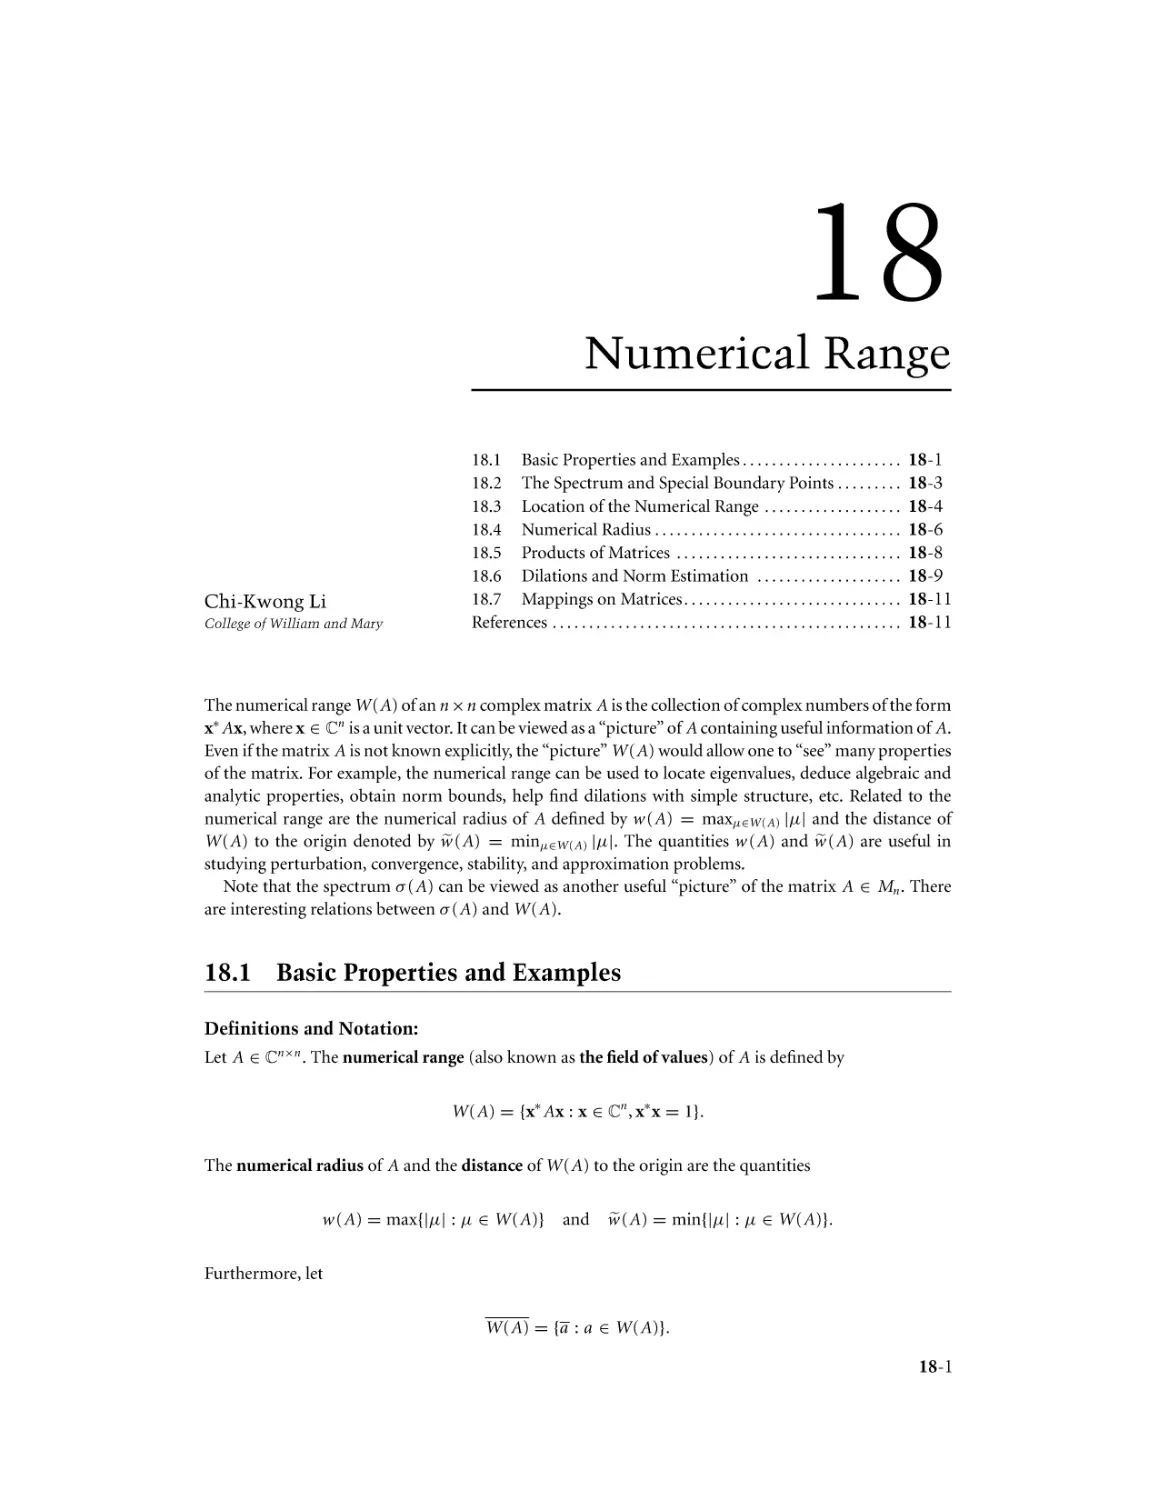 Chapter 18. Numerical Range